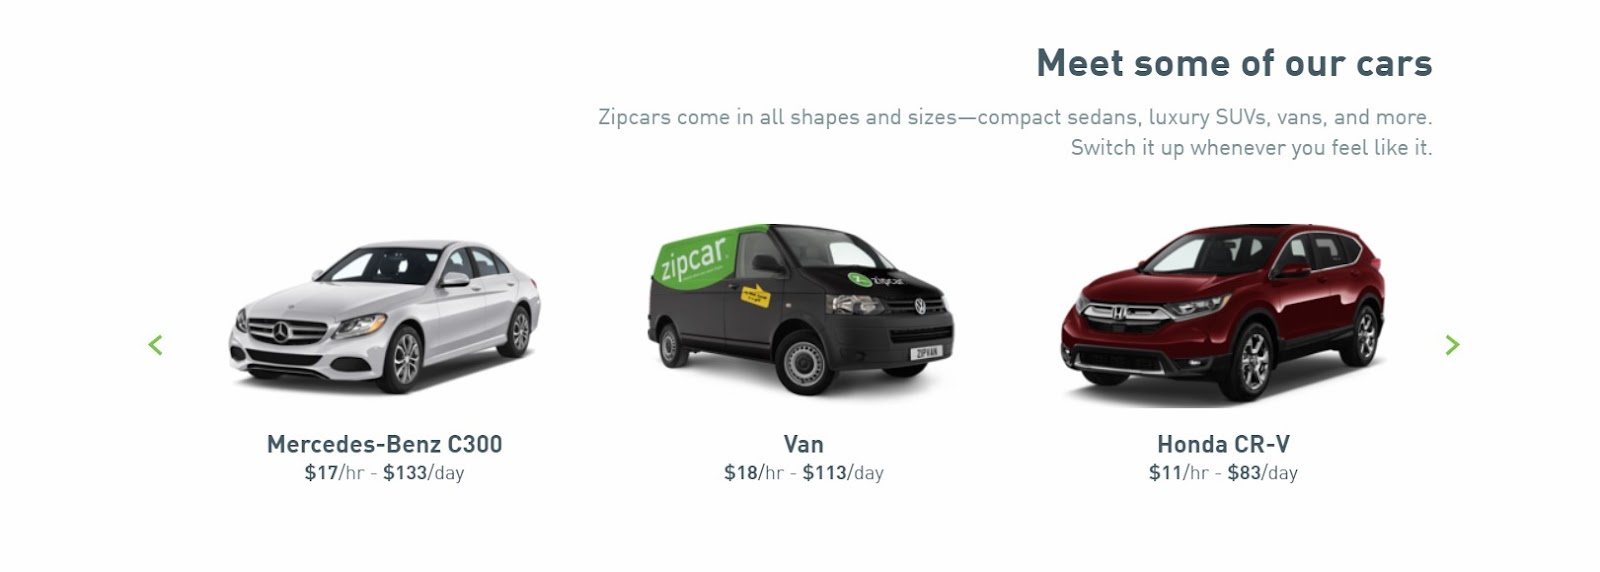 Zipcar Prices & Vehicles